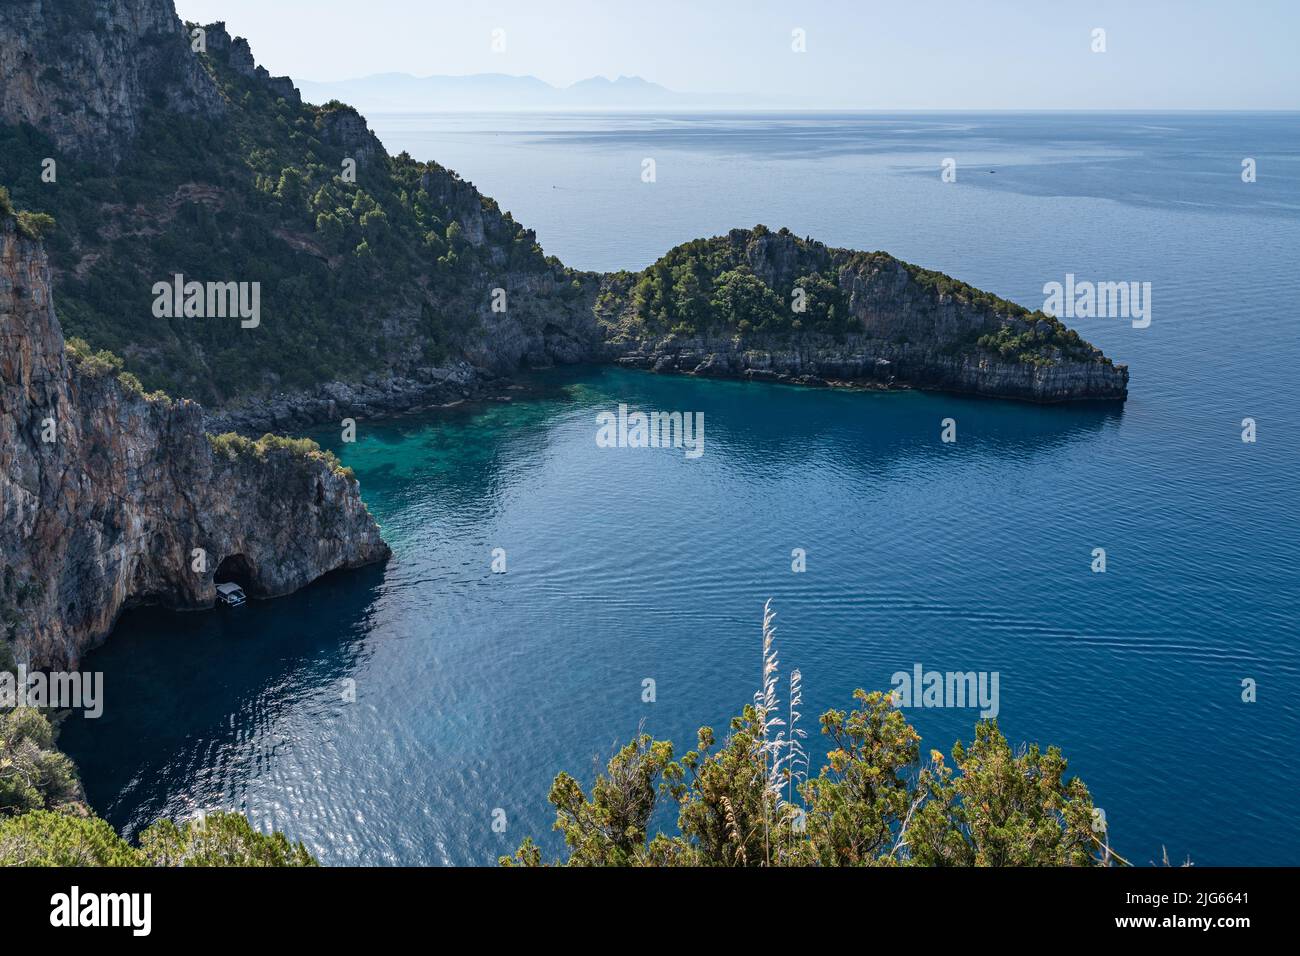 A scenic bay at Cilento National Park near Marina di Camerota, Campania, Italy Stock Photo